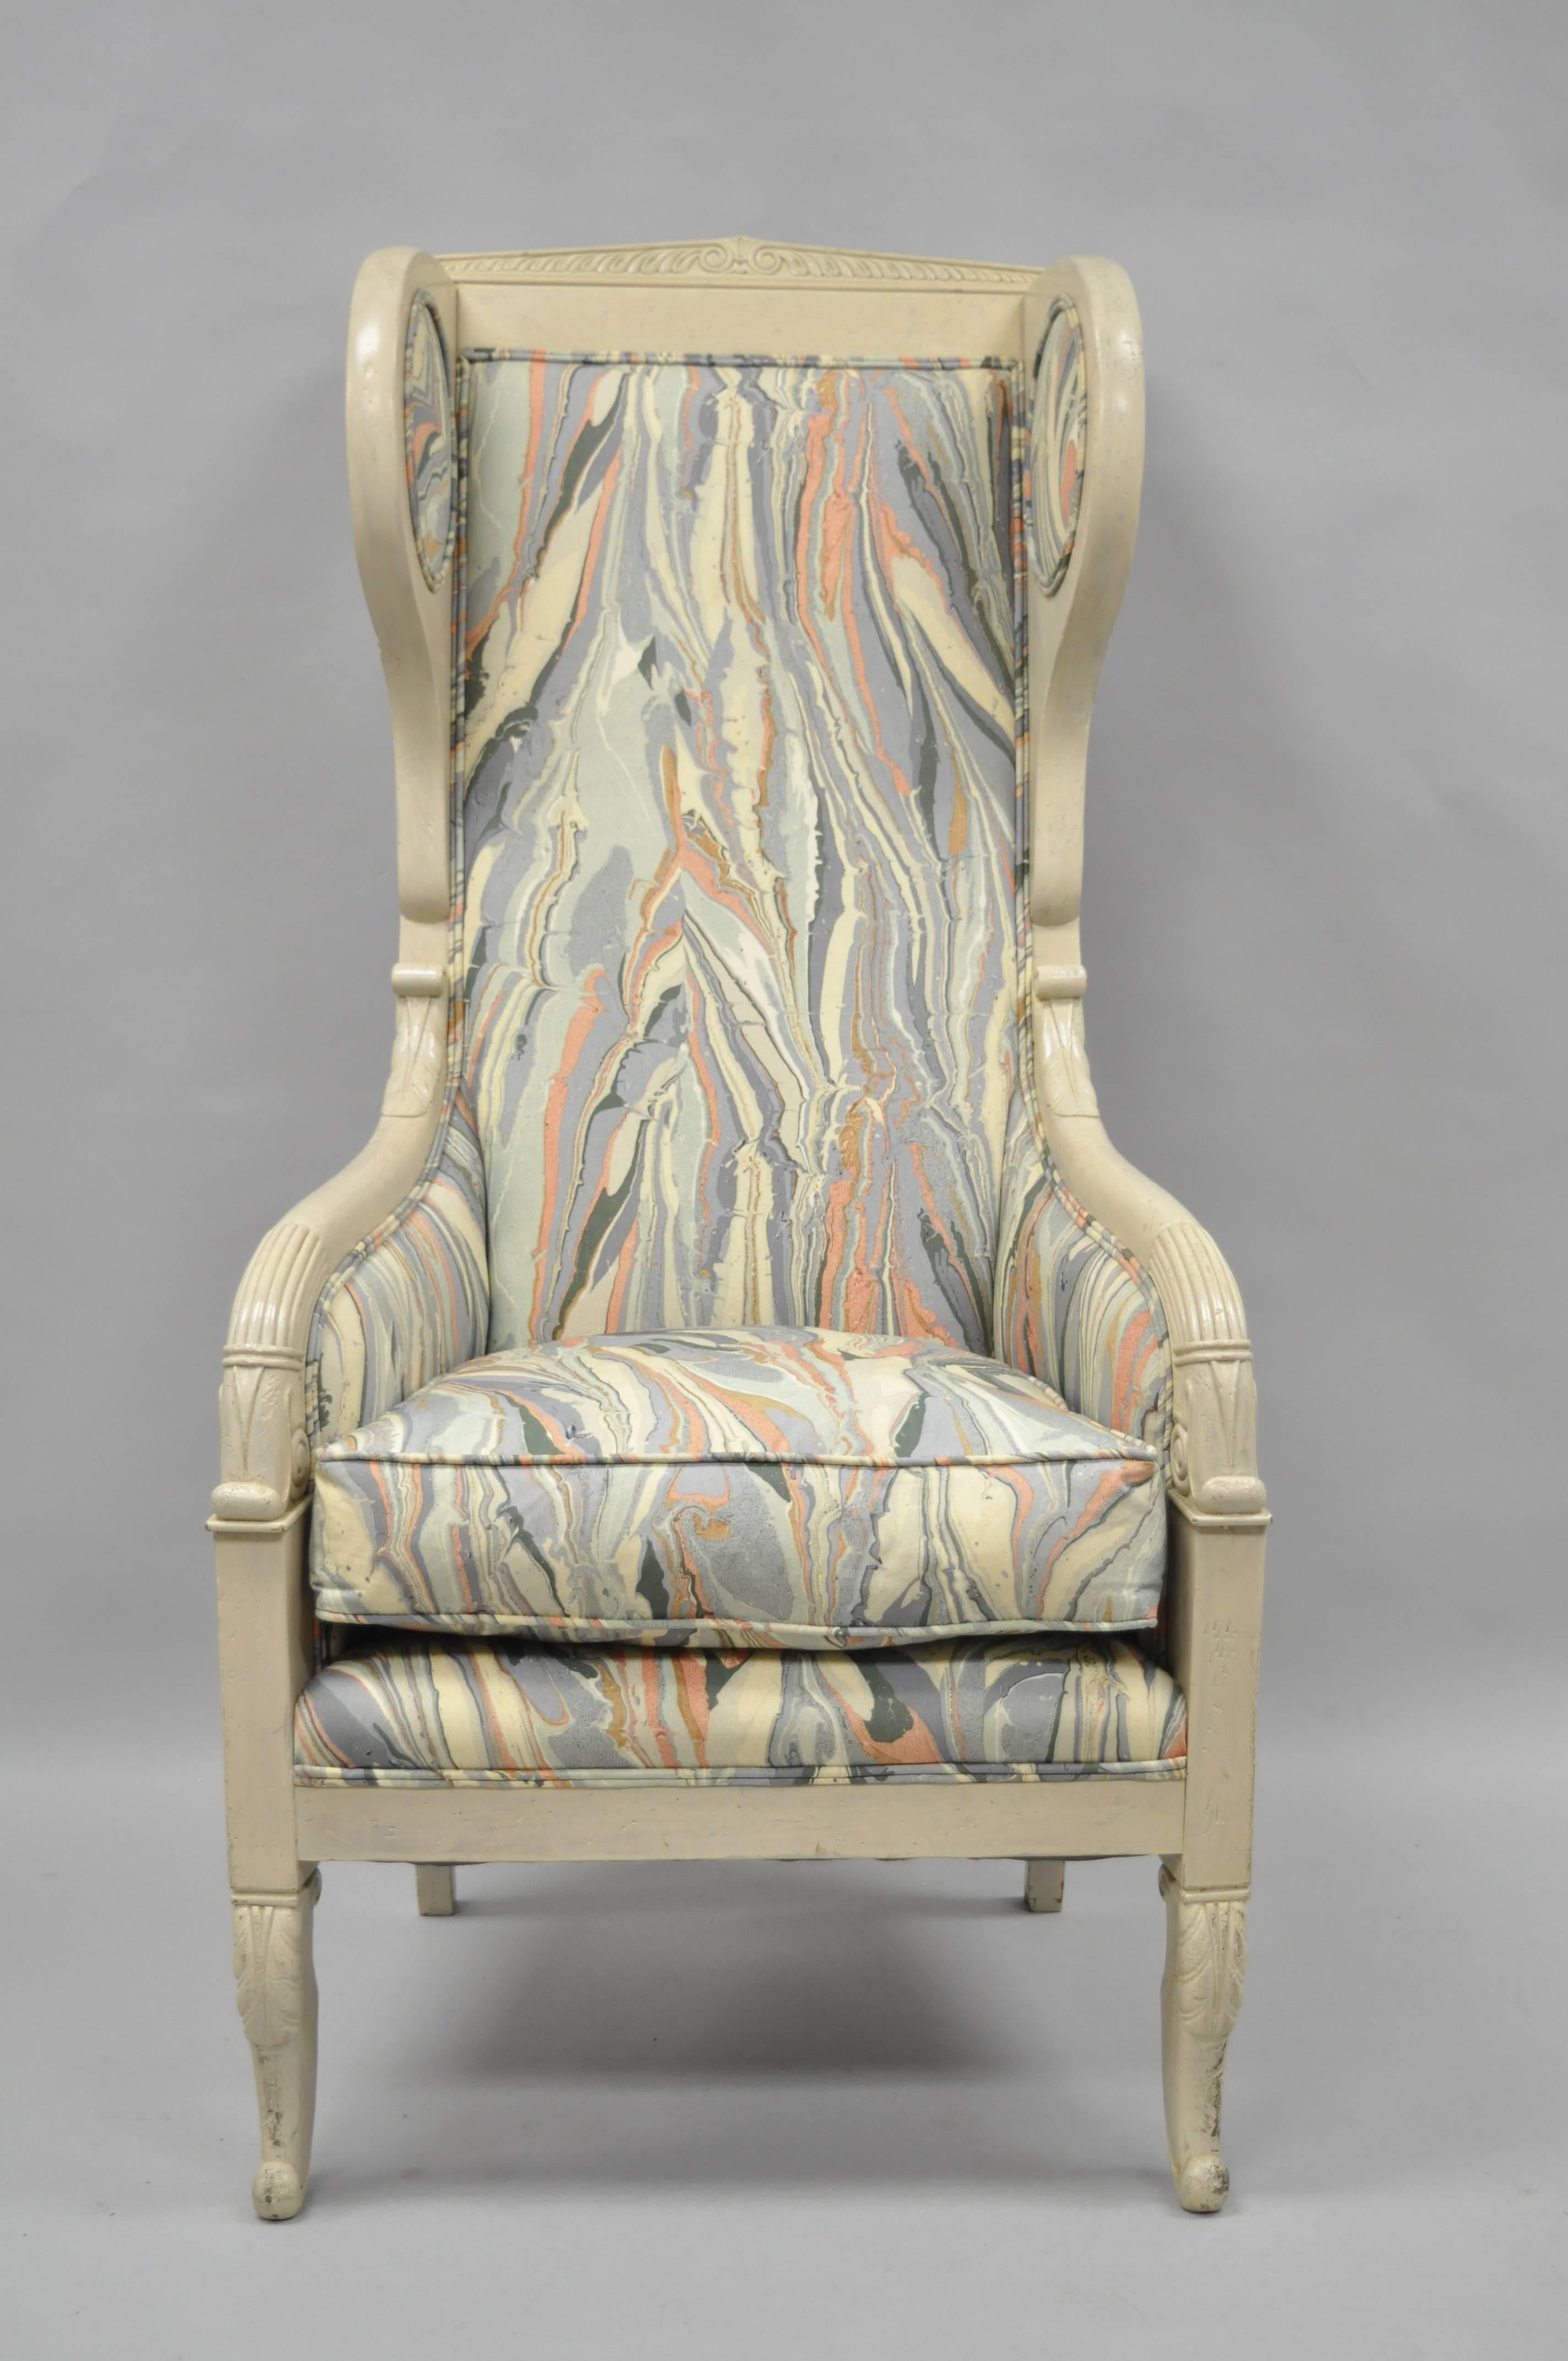 Vintage Sessel mit hoher Rückenlehne im französischen Empire / neoklassischen Stil mit marmoriertem Stoff. Das Möbelstück zeichnet sich durch einen hohen, geschnitzten Massivholzrahmen, einzigartige gepolsterte Flügel, formschöne Beine, eine